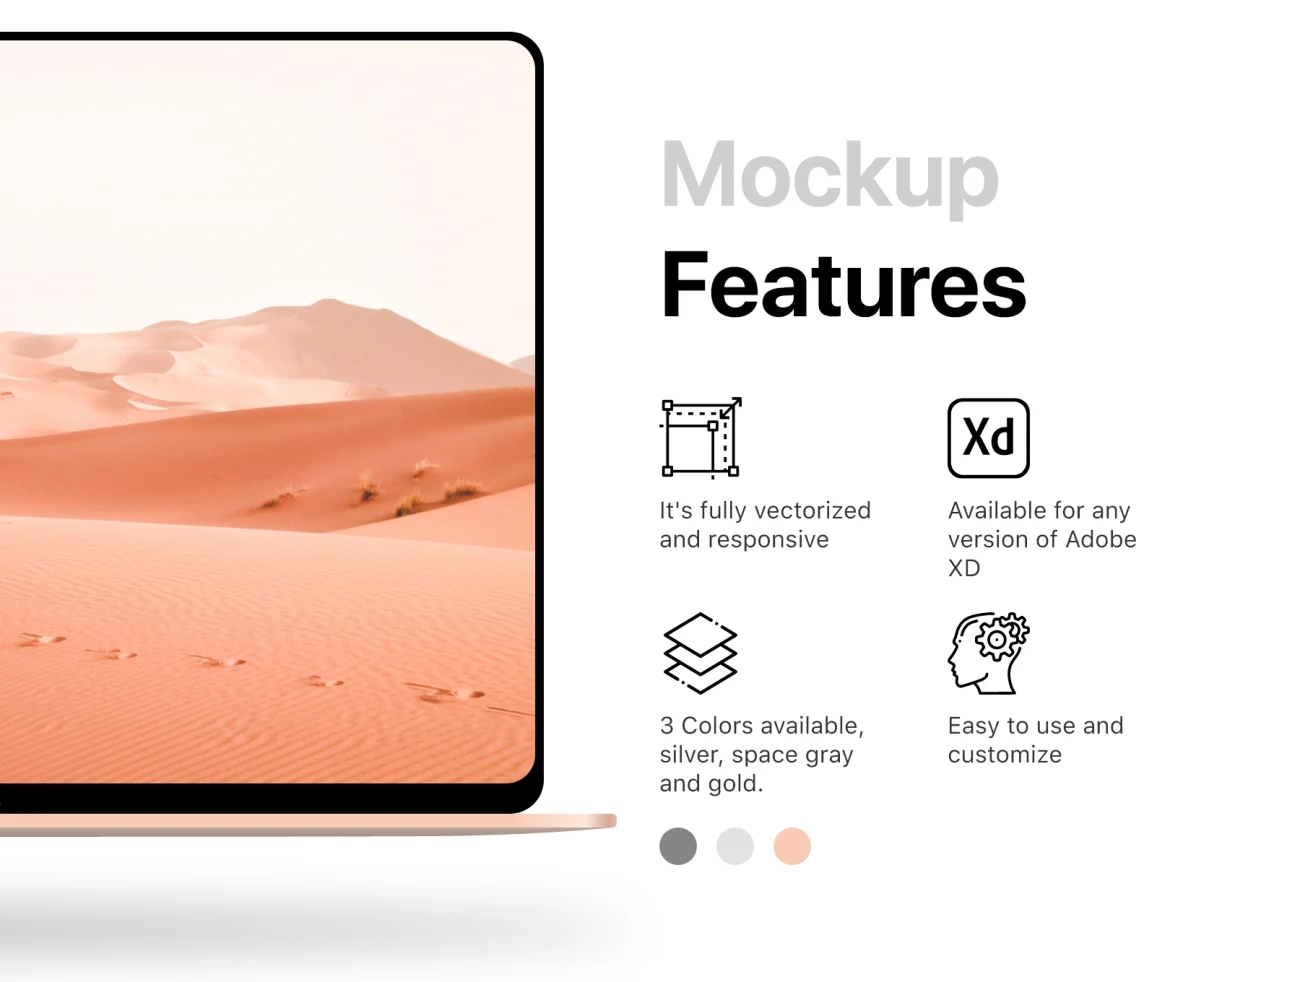 MacBook Mockup XD苹果笔记本智能样机-产品展示、优雅样机、创意展示、样机、简约样机-到位啦UI